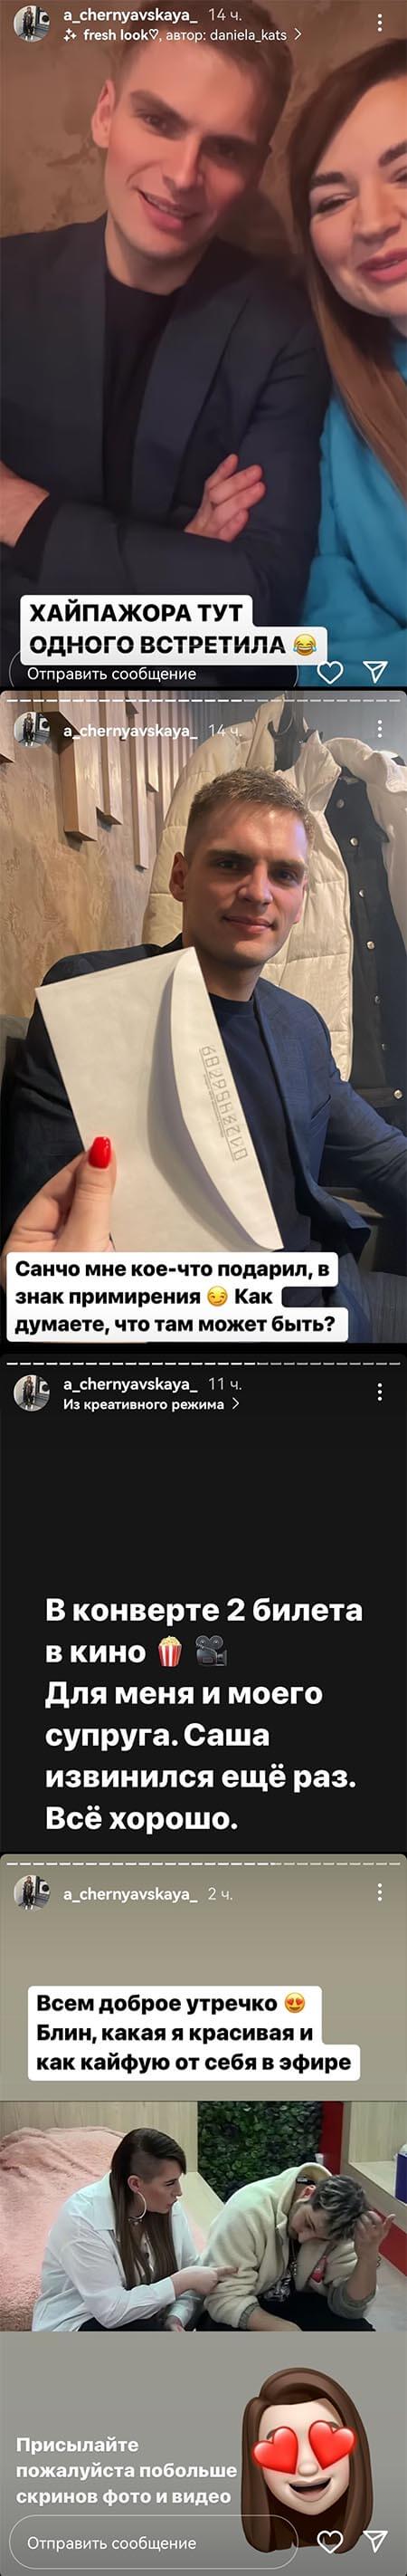 Сторис Александры Черно вконтакте 